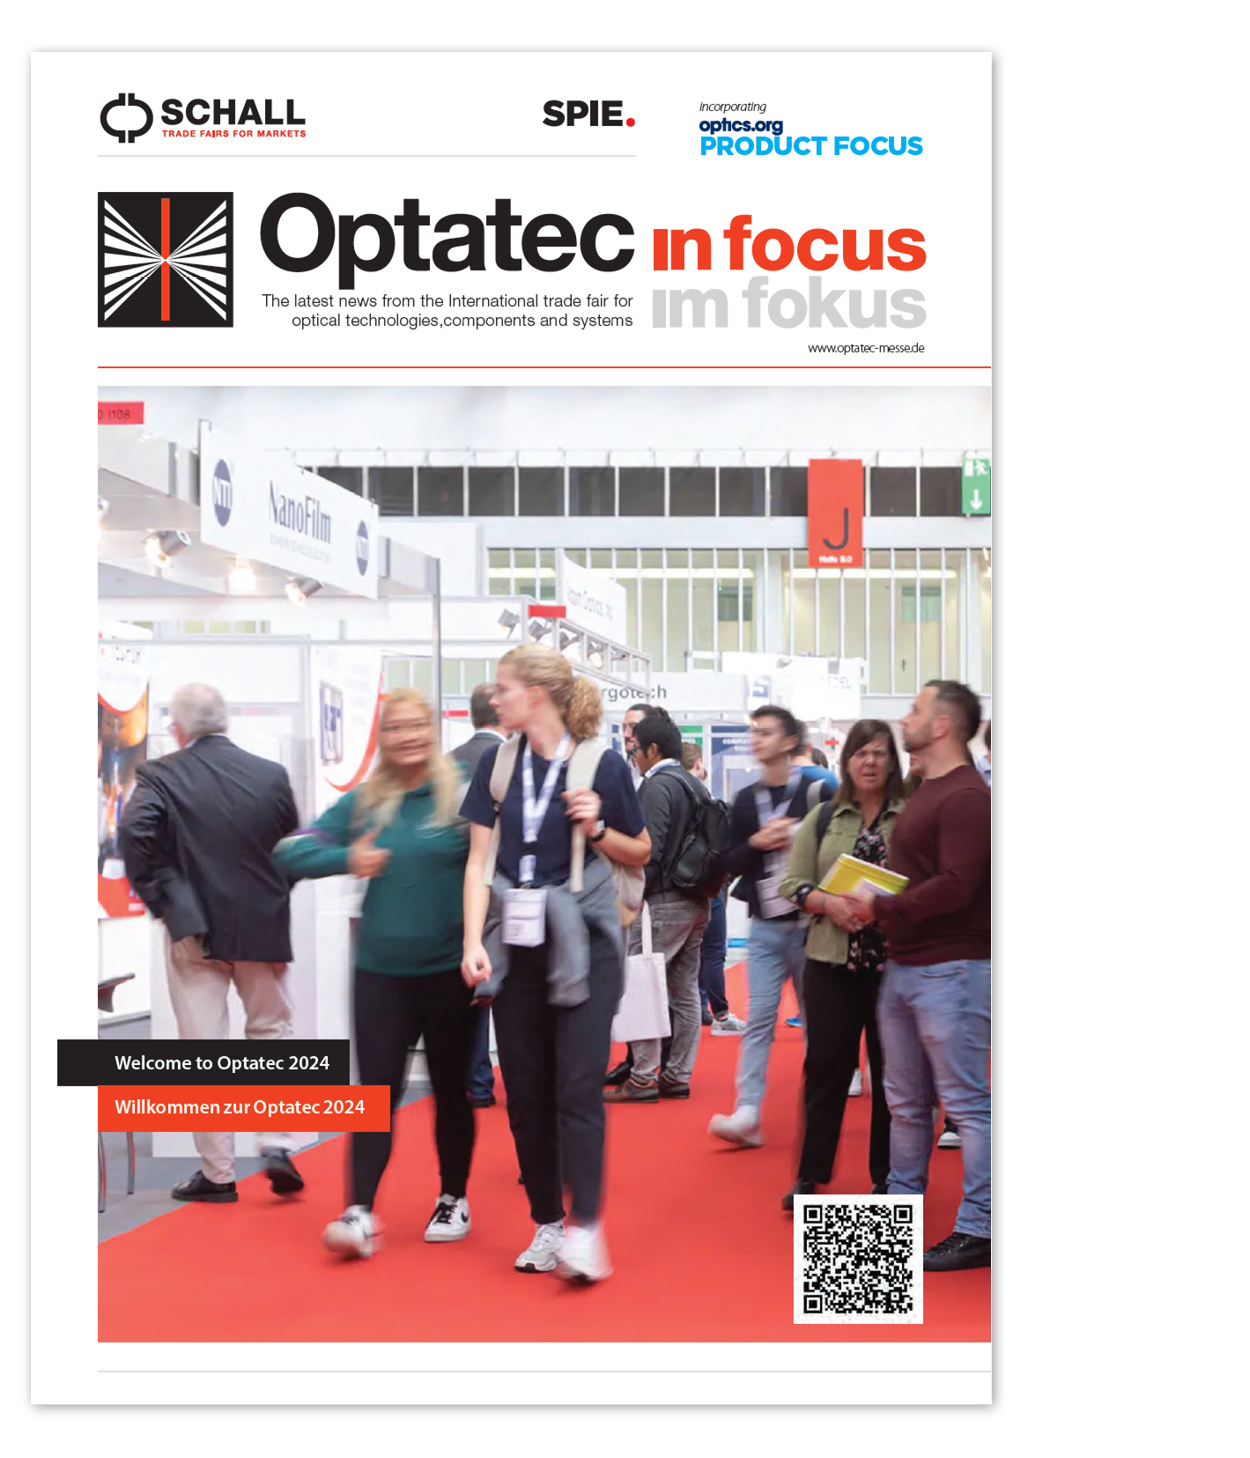 Optatec Internationale Fachmesse für optische Technologien, Komponenten und Systeme optatec in fokus titel